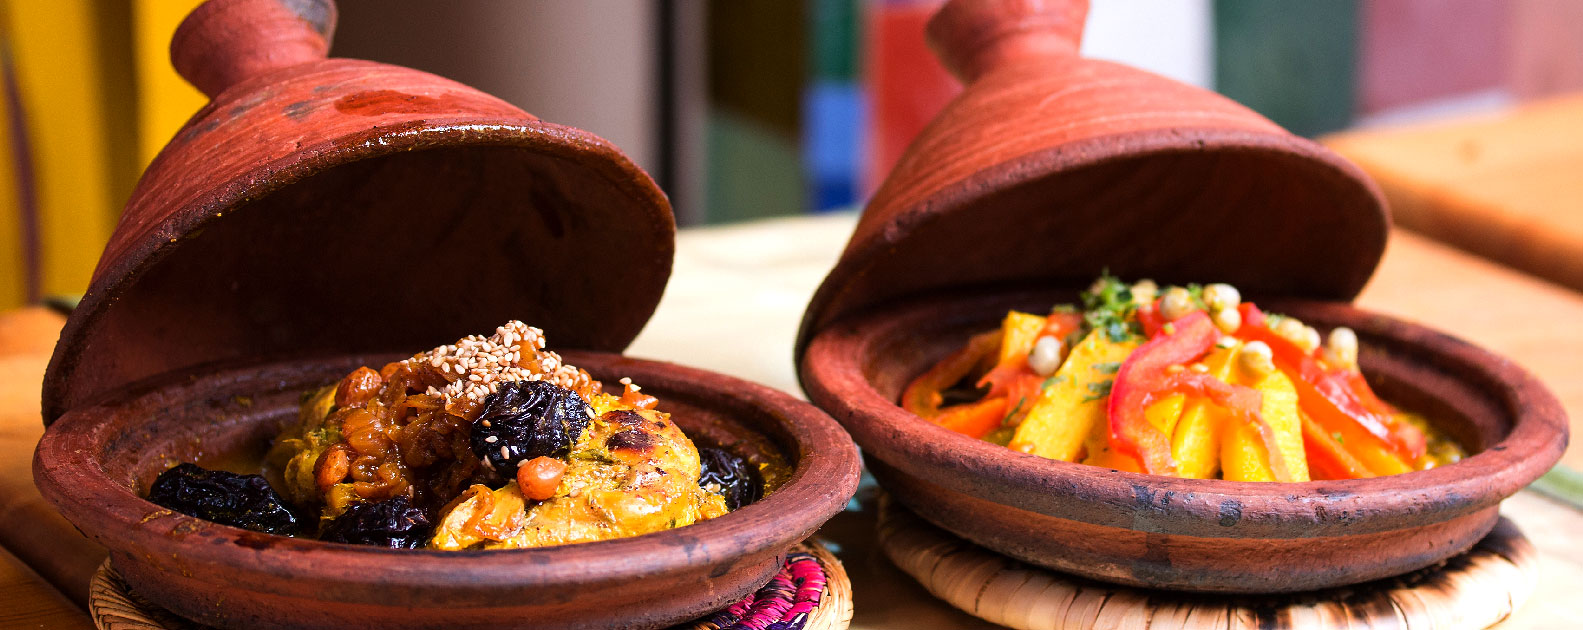 Rozkosze marokańskiej gastronomii